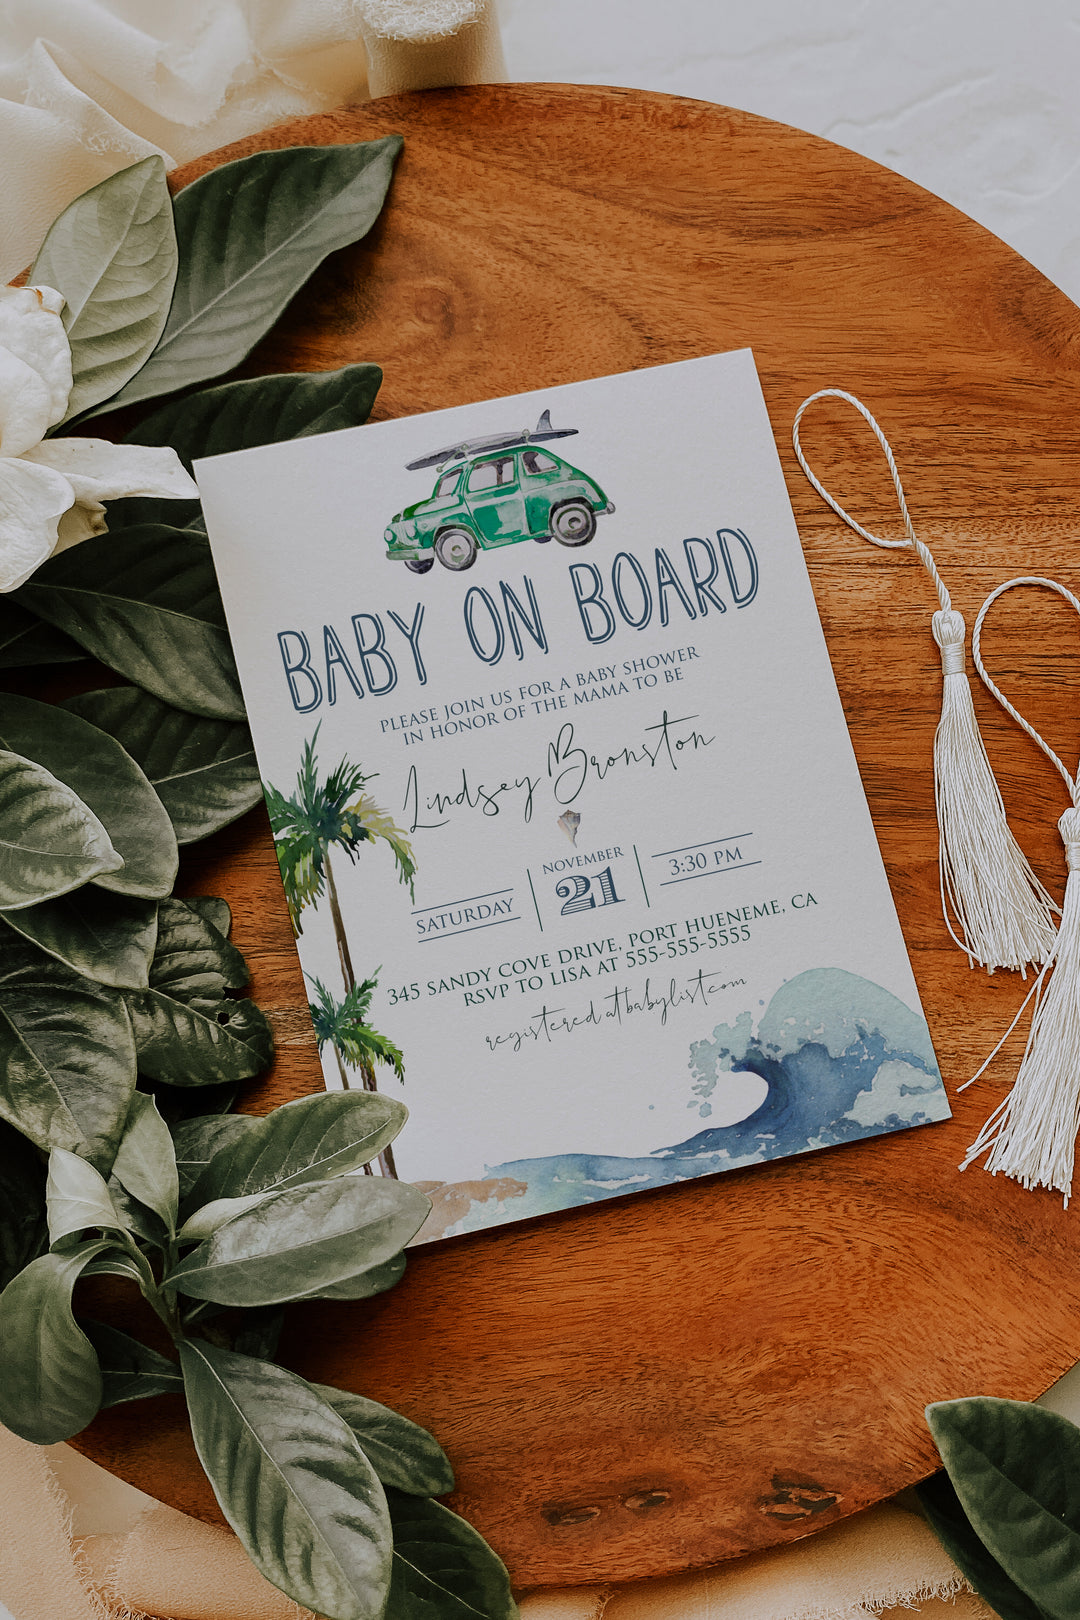 Surfing Theme Baby Shower Invitation - Beach Theme Baby Shower Invitation - Baby on Board Invitation - California Beach Baby Shower Invitation